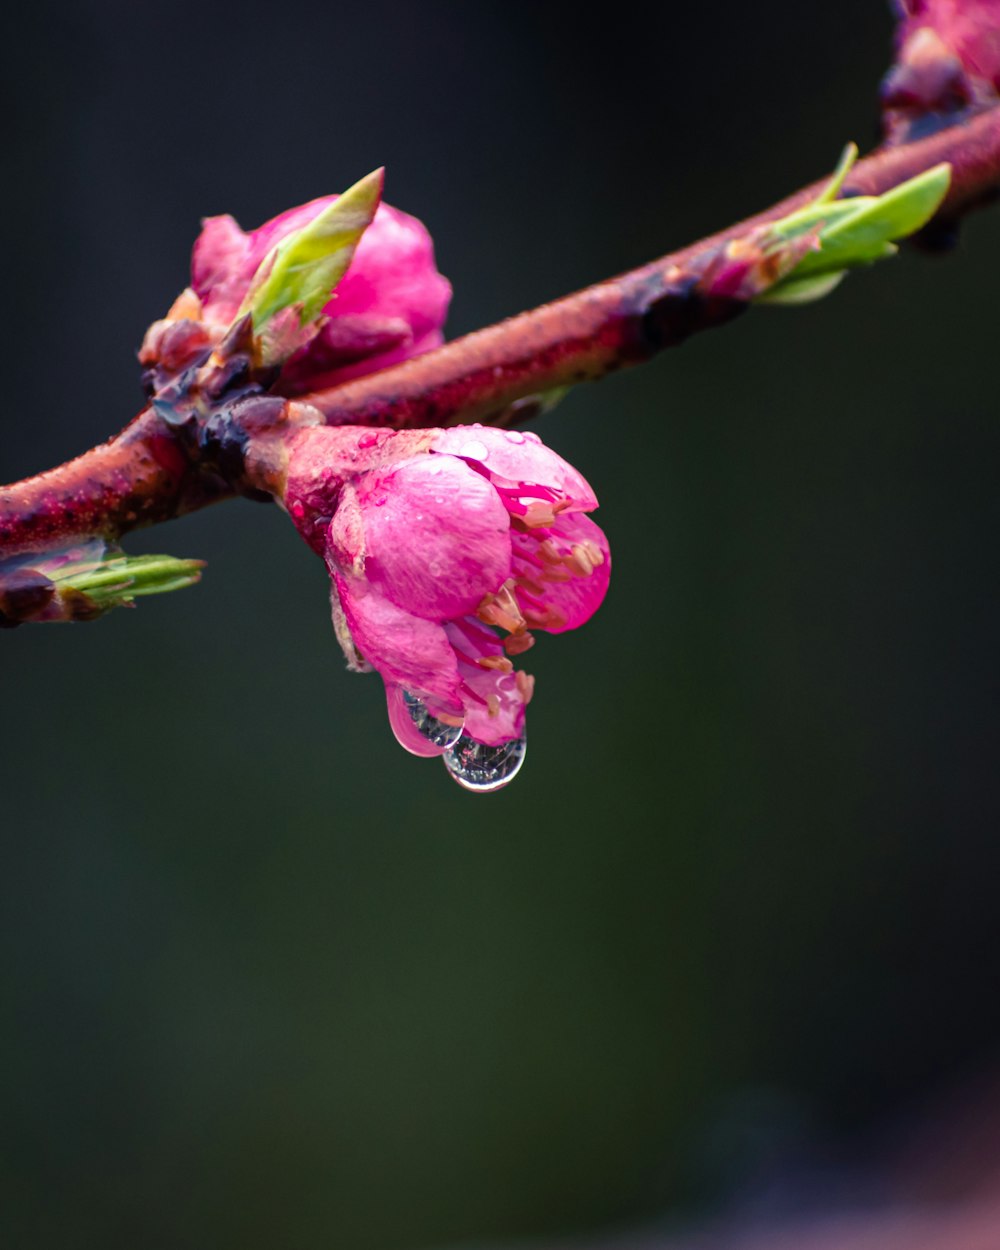 물방울이 맺힌 분홍색 꽃